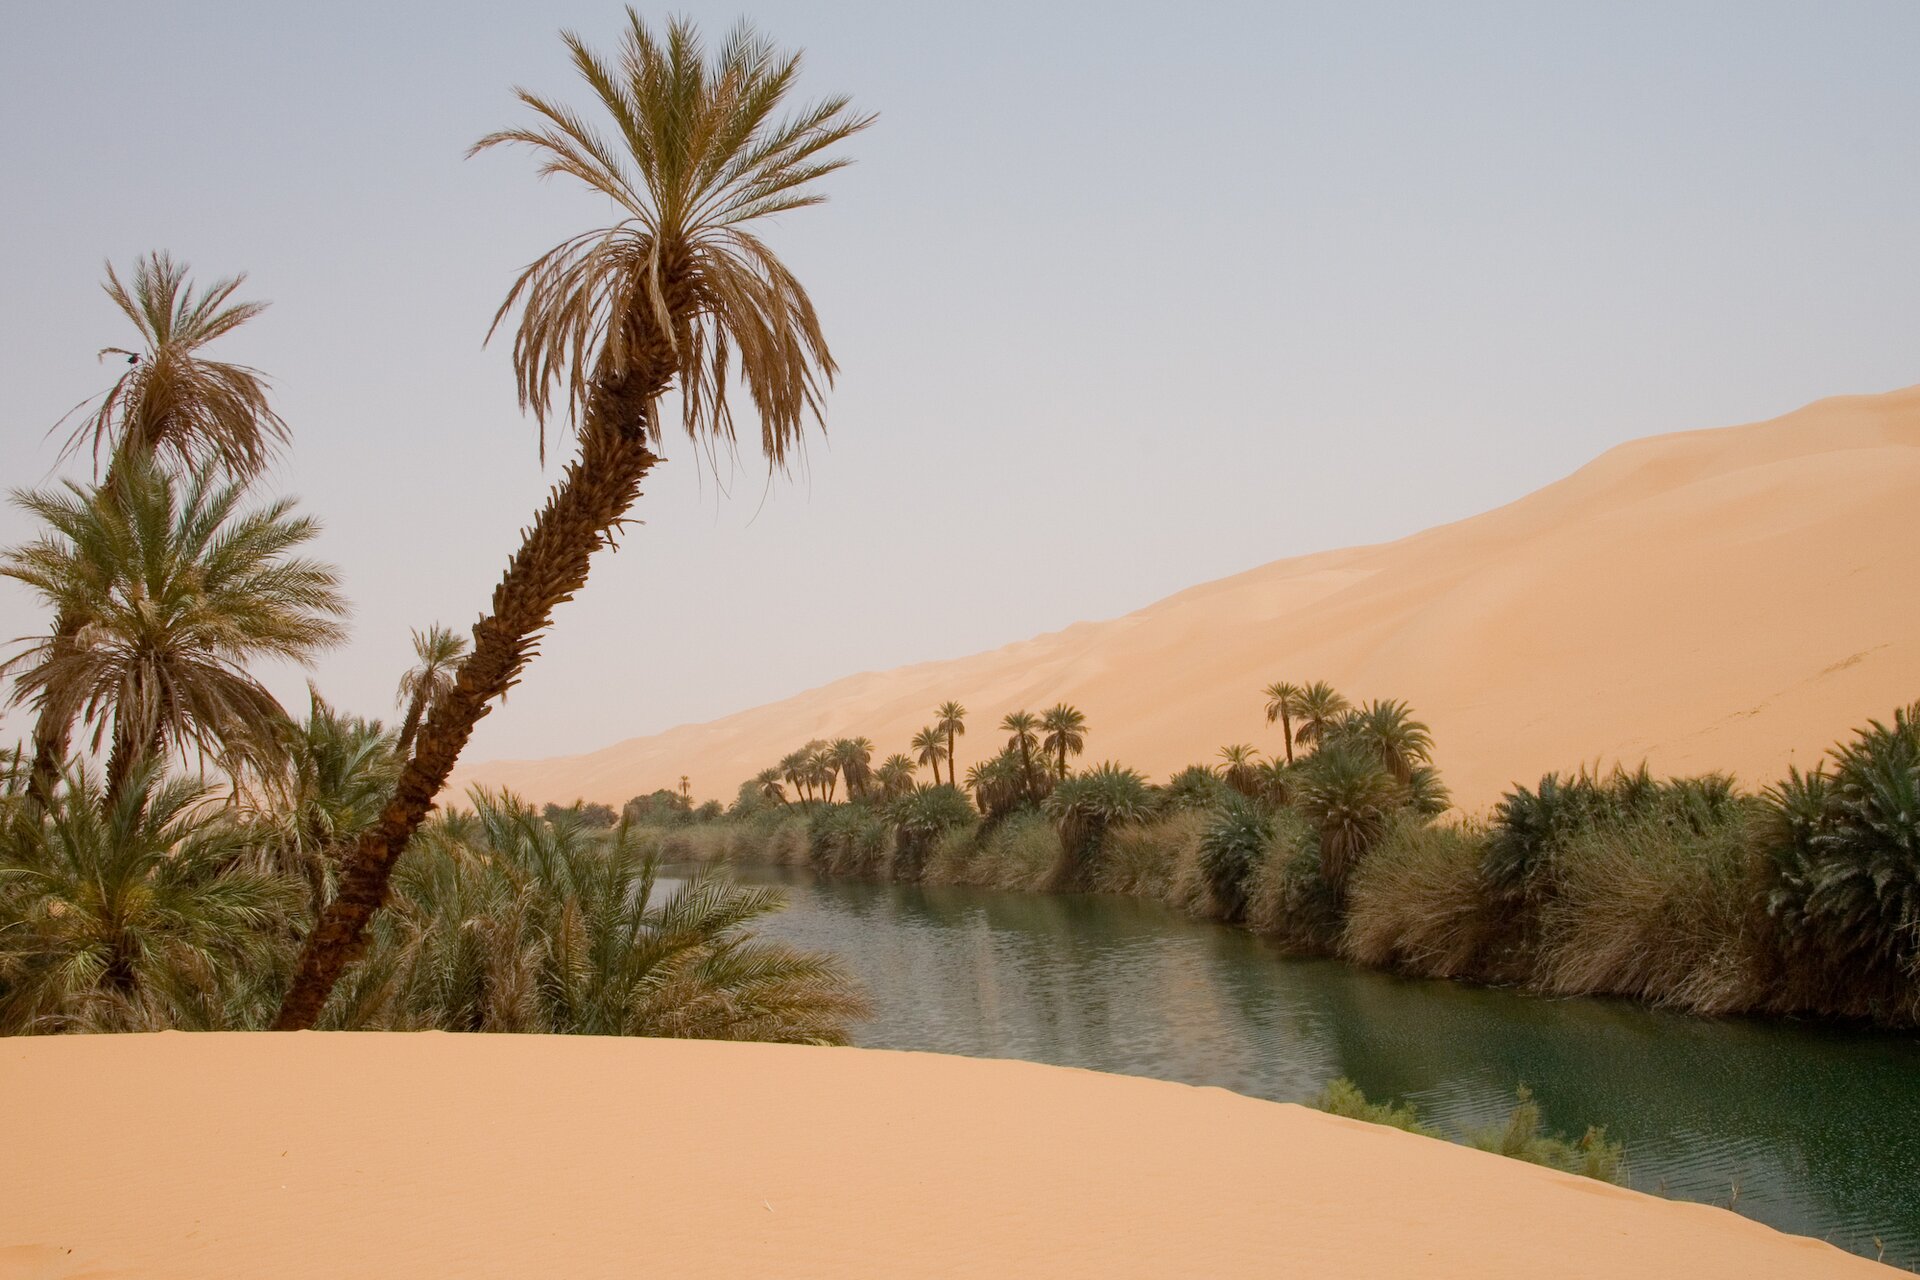 Oaza na Saharze – płytko zalegające wody gruntowe pozwalają na rozwój zielonej roślinności w wilgotnych zagłębieniach terenu